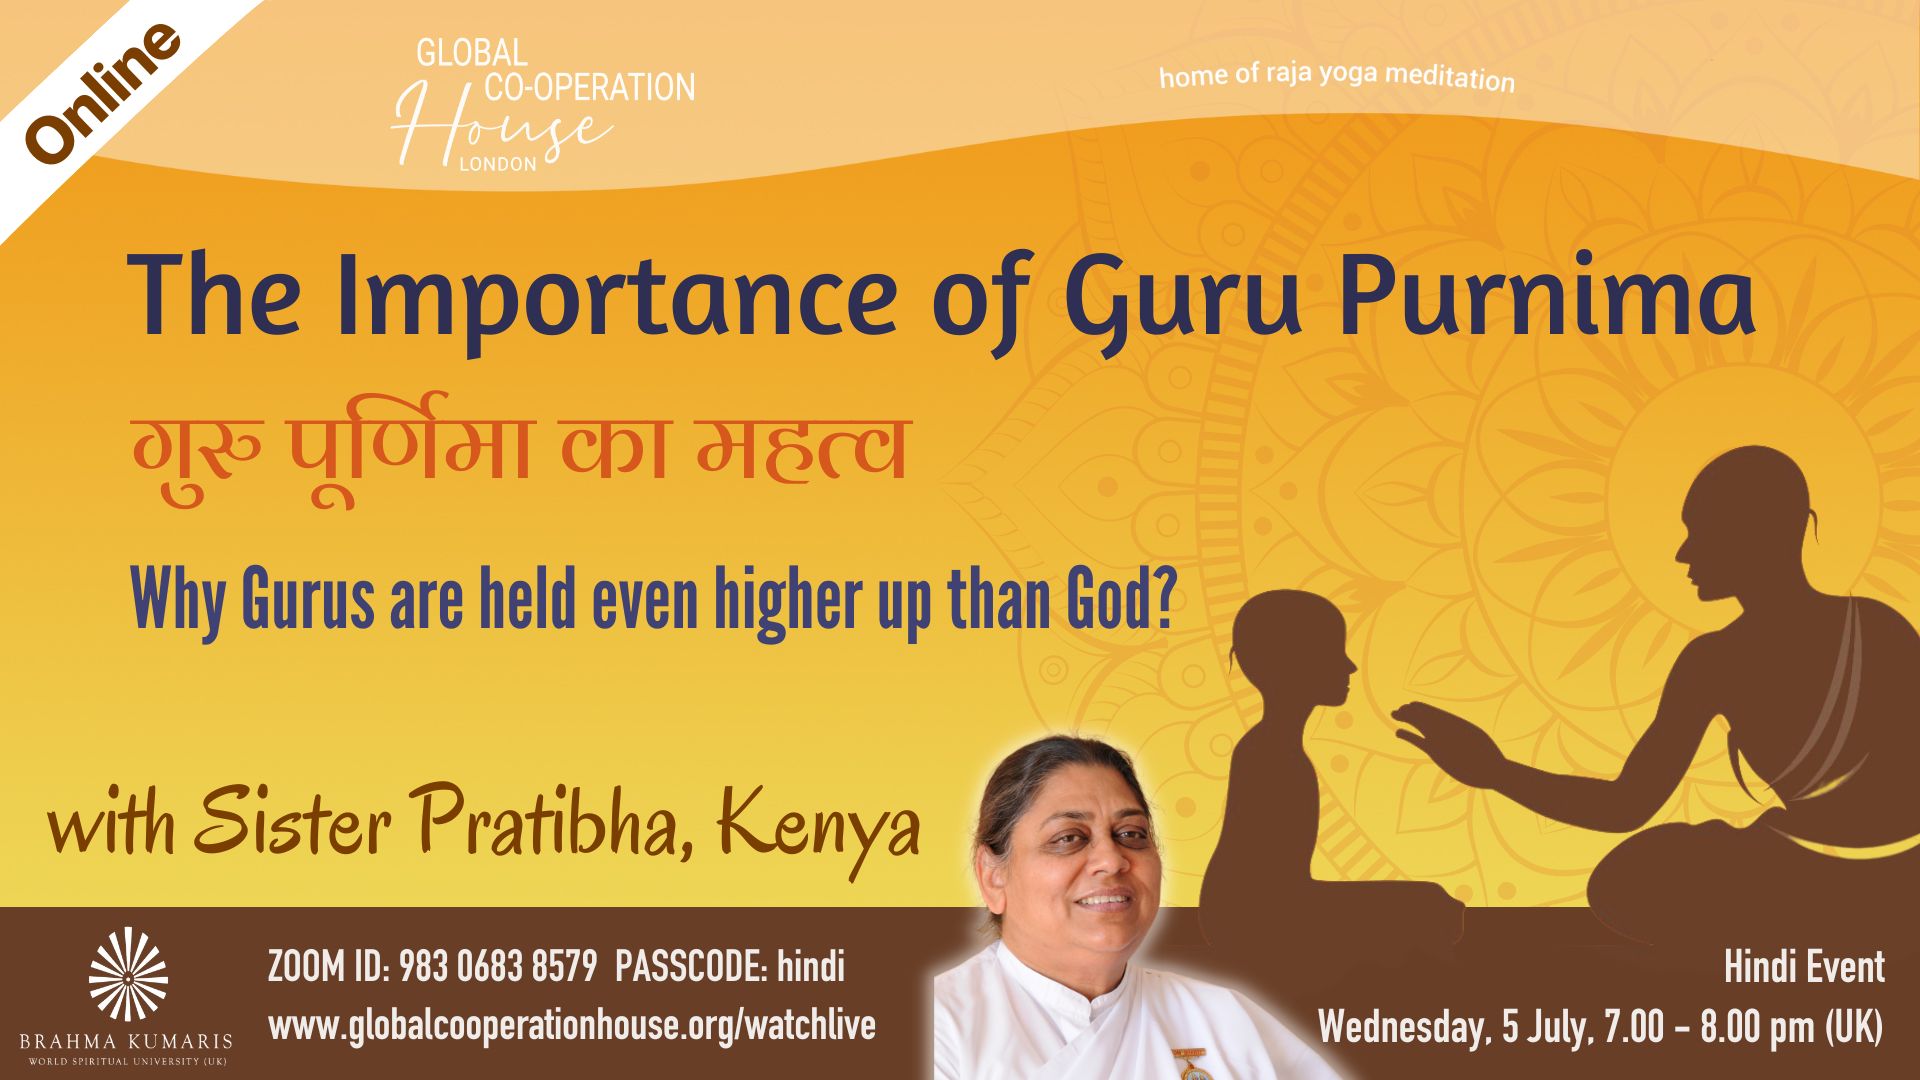 गुरु पूर्णिमा का महत्व : The Importance of Guru Purnima 